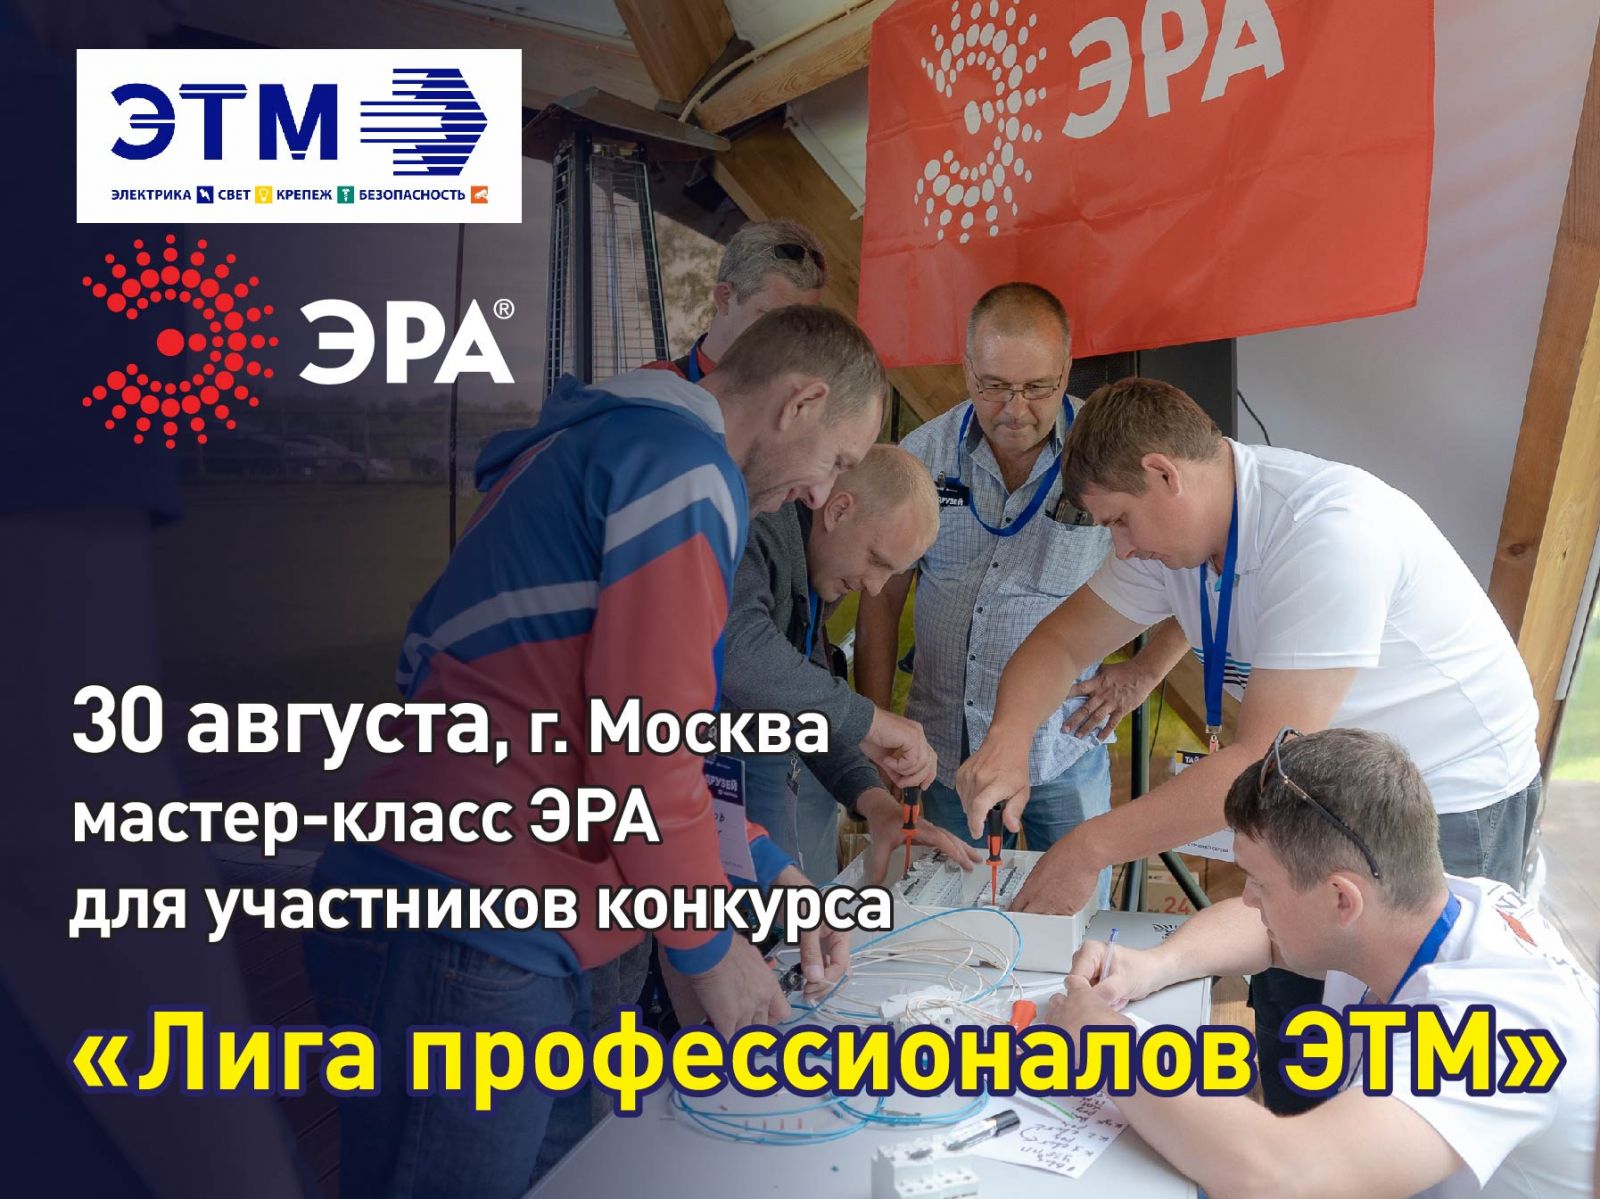 В Москве состоится мастер-класс ЭРА для участников конкурса 